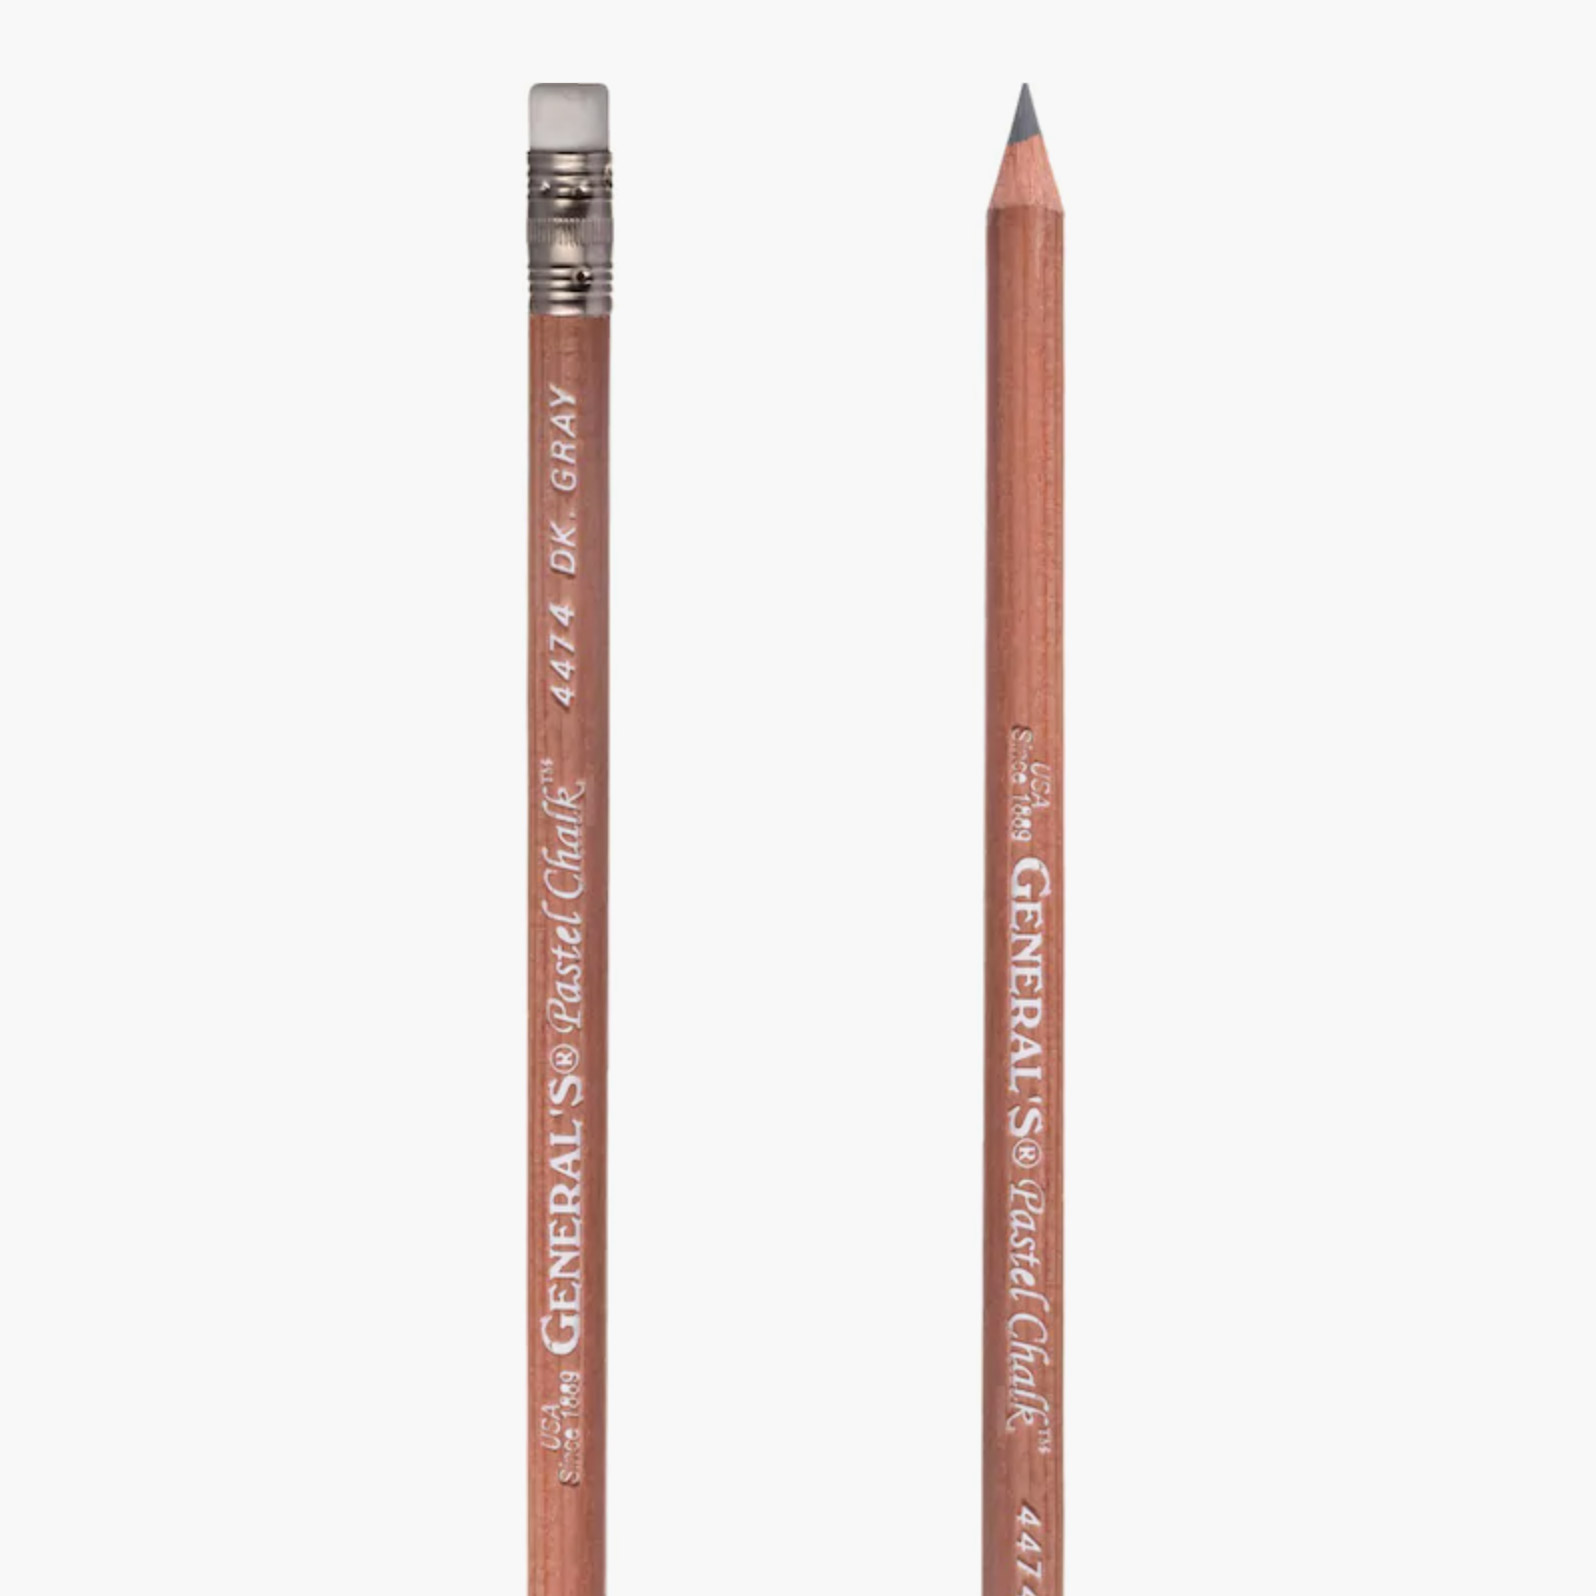 General's Multi-Pastel Chalk pencil in dark grey - Maydel